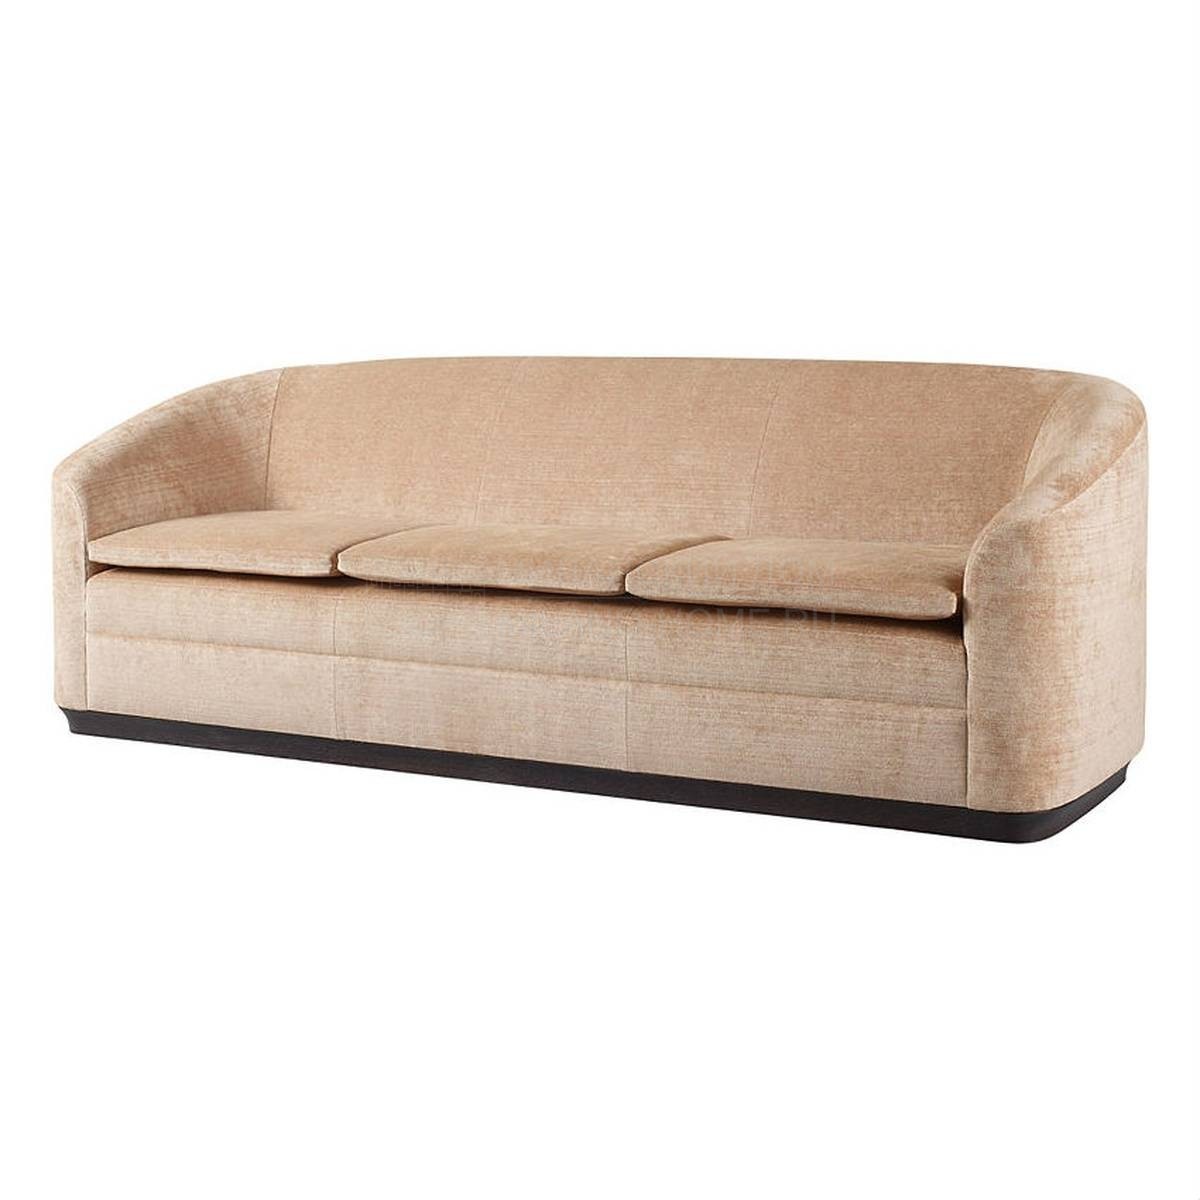 Прямой диван Salon sofa из США фабрики BAKER